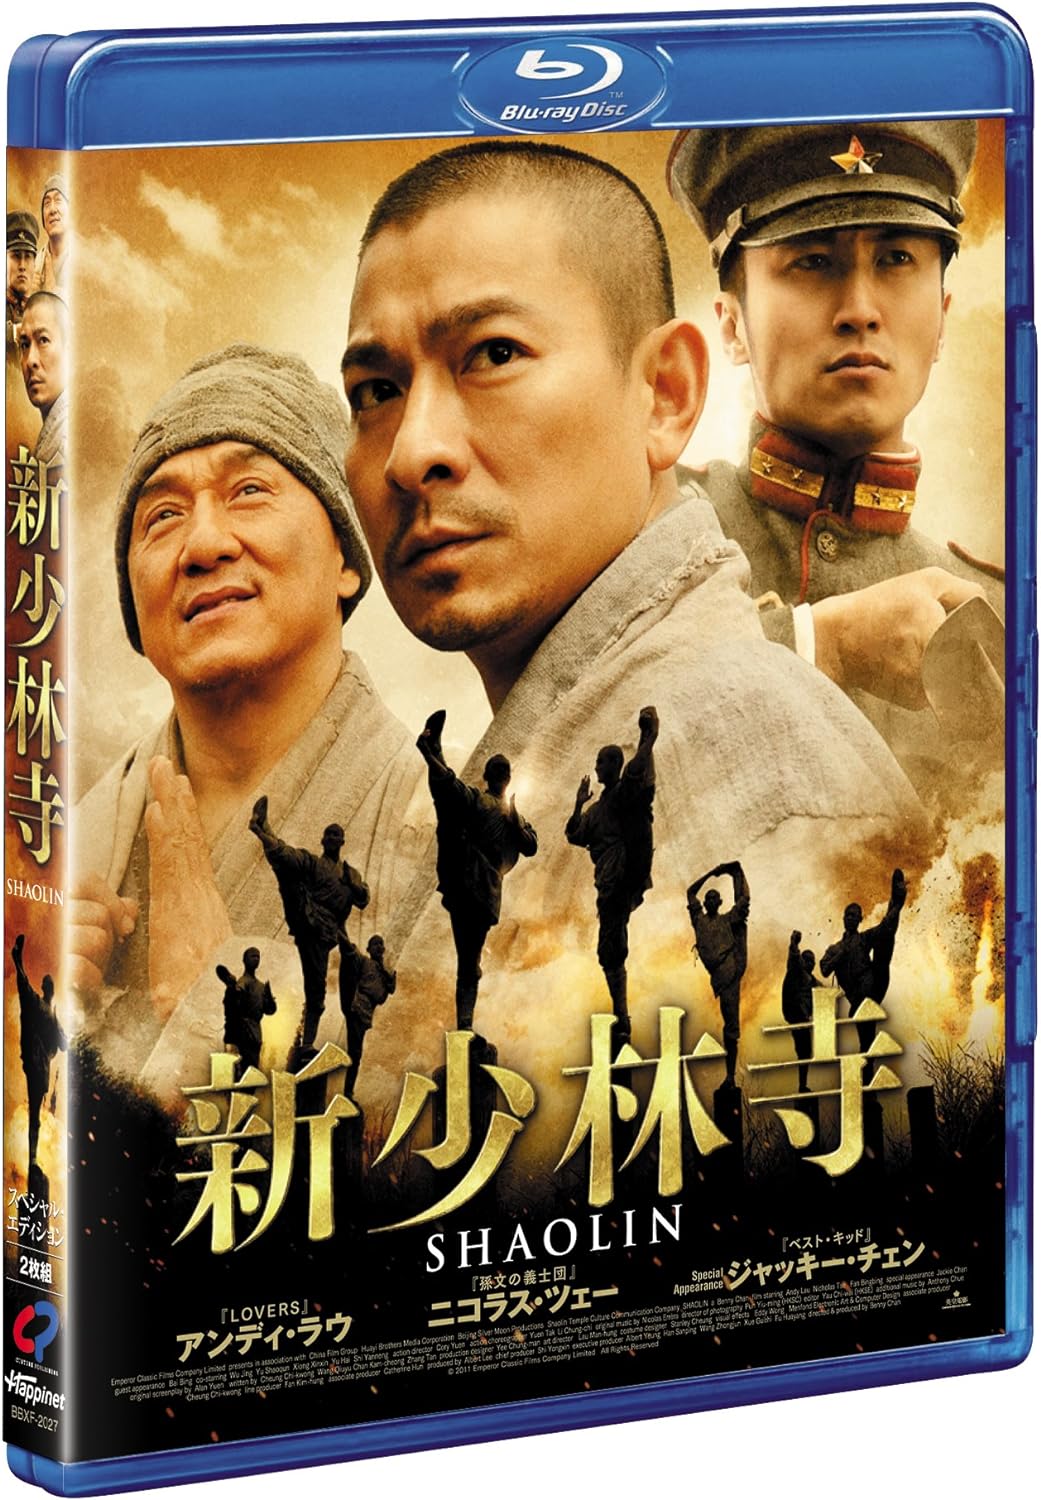 新少林寺/SHAOLIN スペシャル・プライス [Blu-ray]